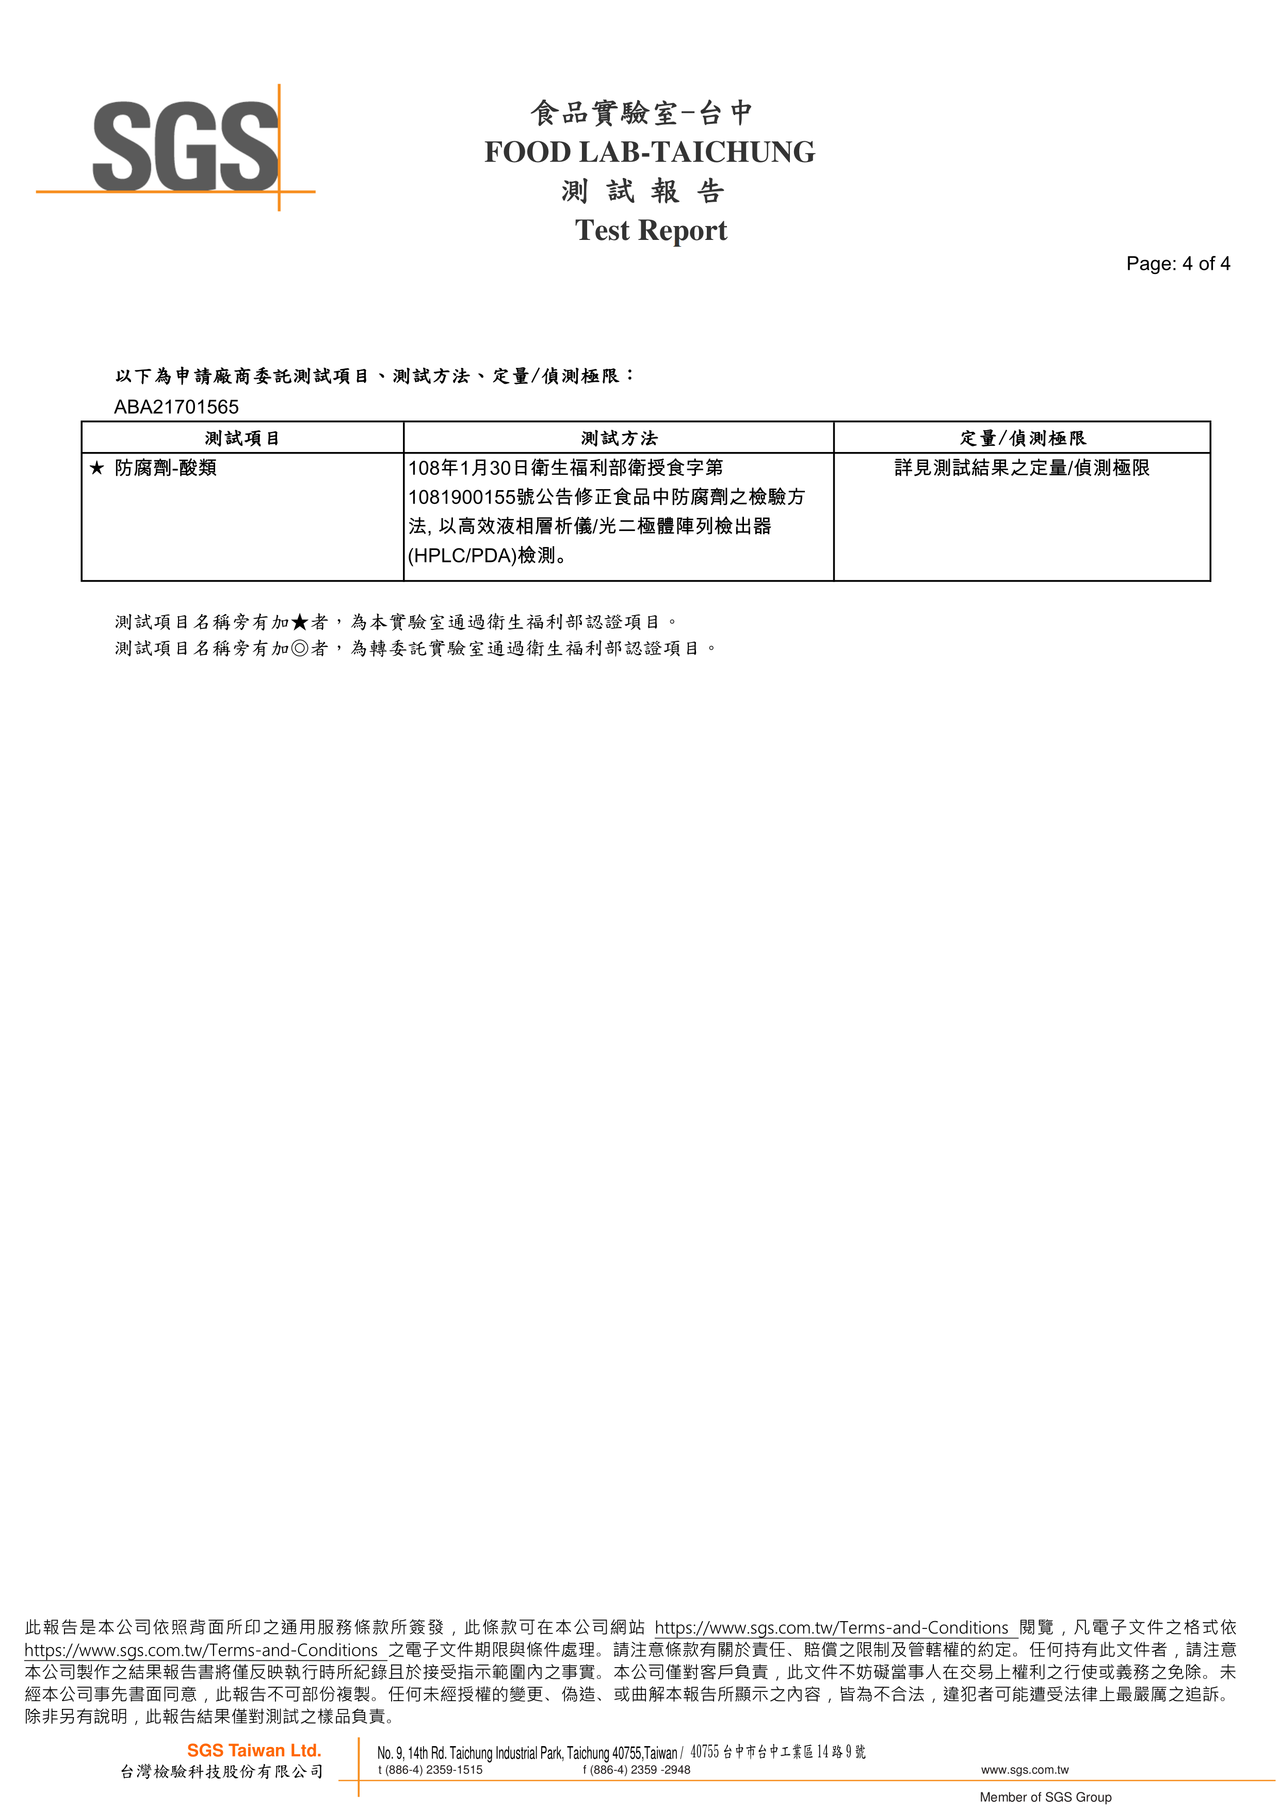 海貝粥-防腐劑檢驗報告2021.07.19